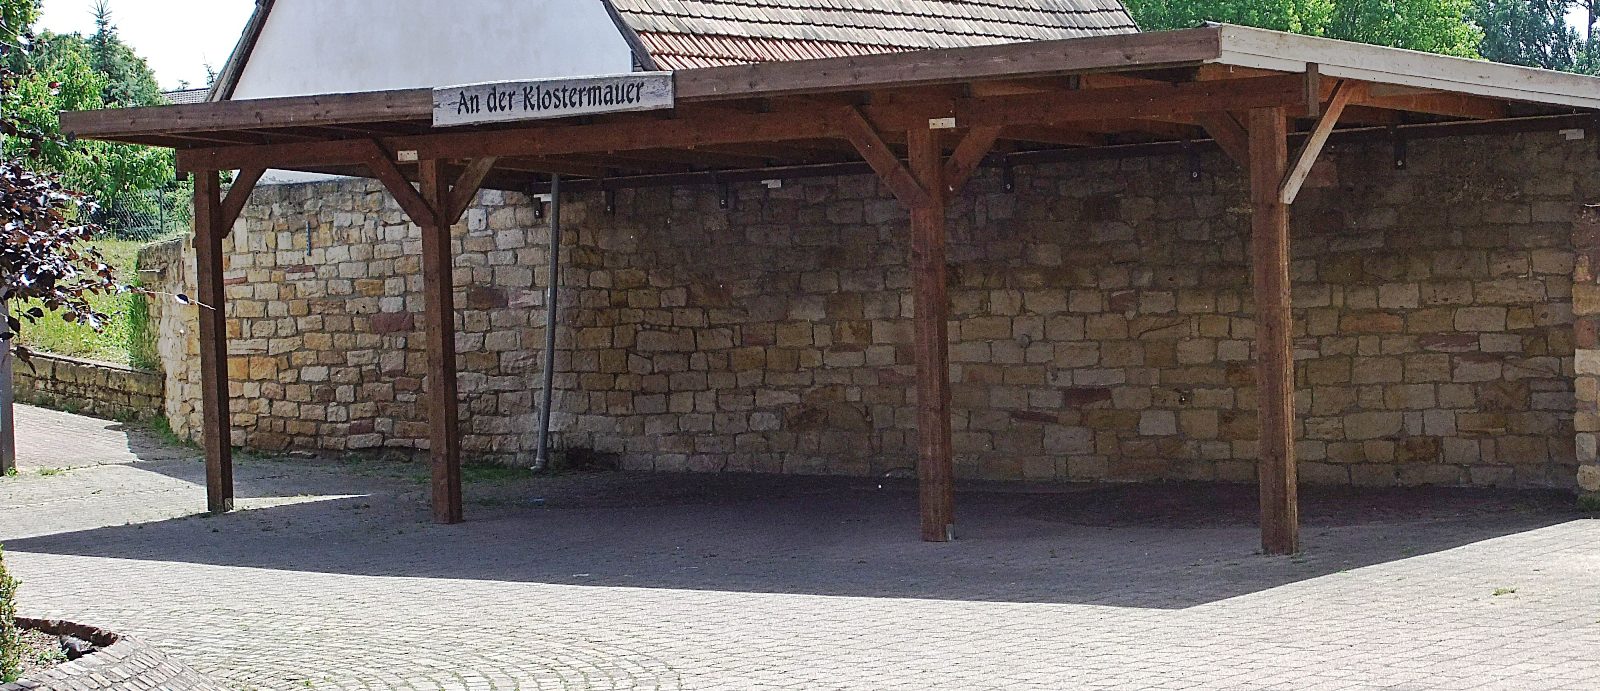 Datei:An der Klostermauer Hördt.JPG